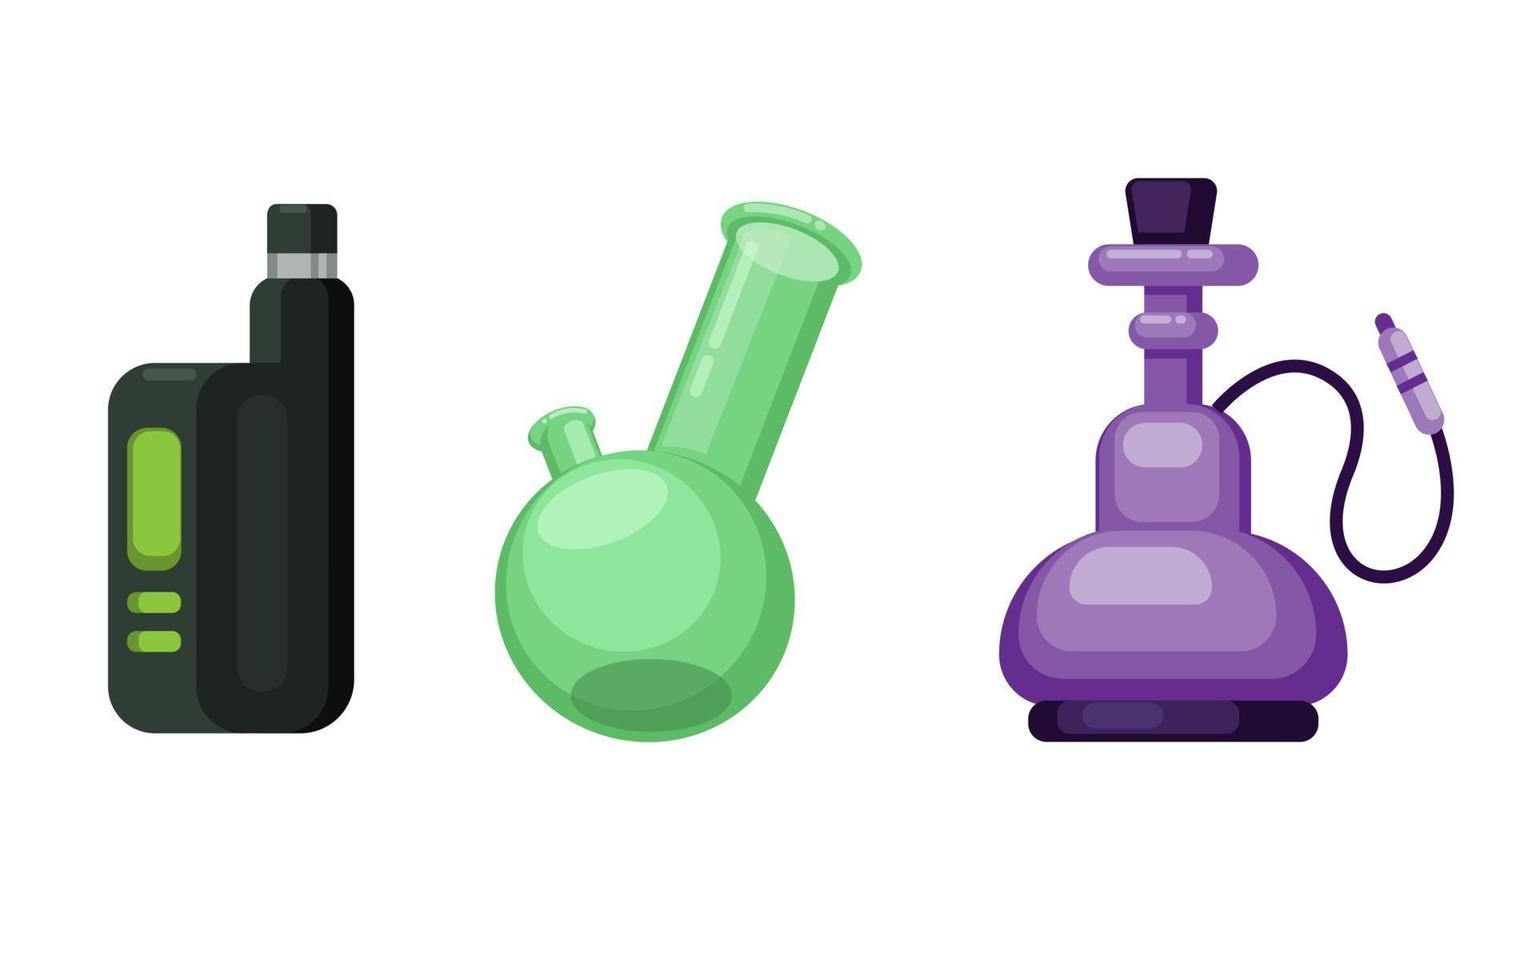 vape, bong et chicha. collection d'objets de symbole de tabagisme alternatif vecteur d'illustration de dessin animé